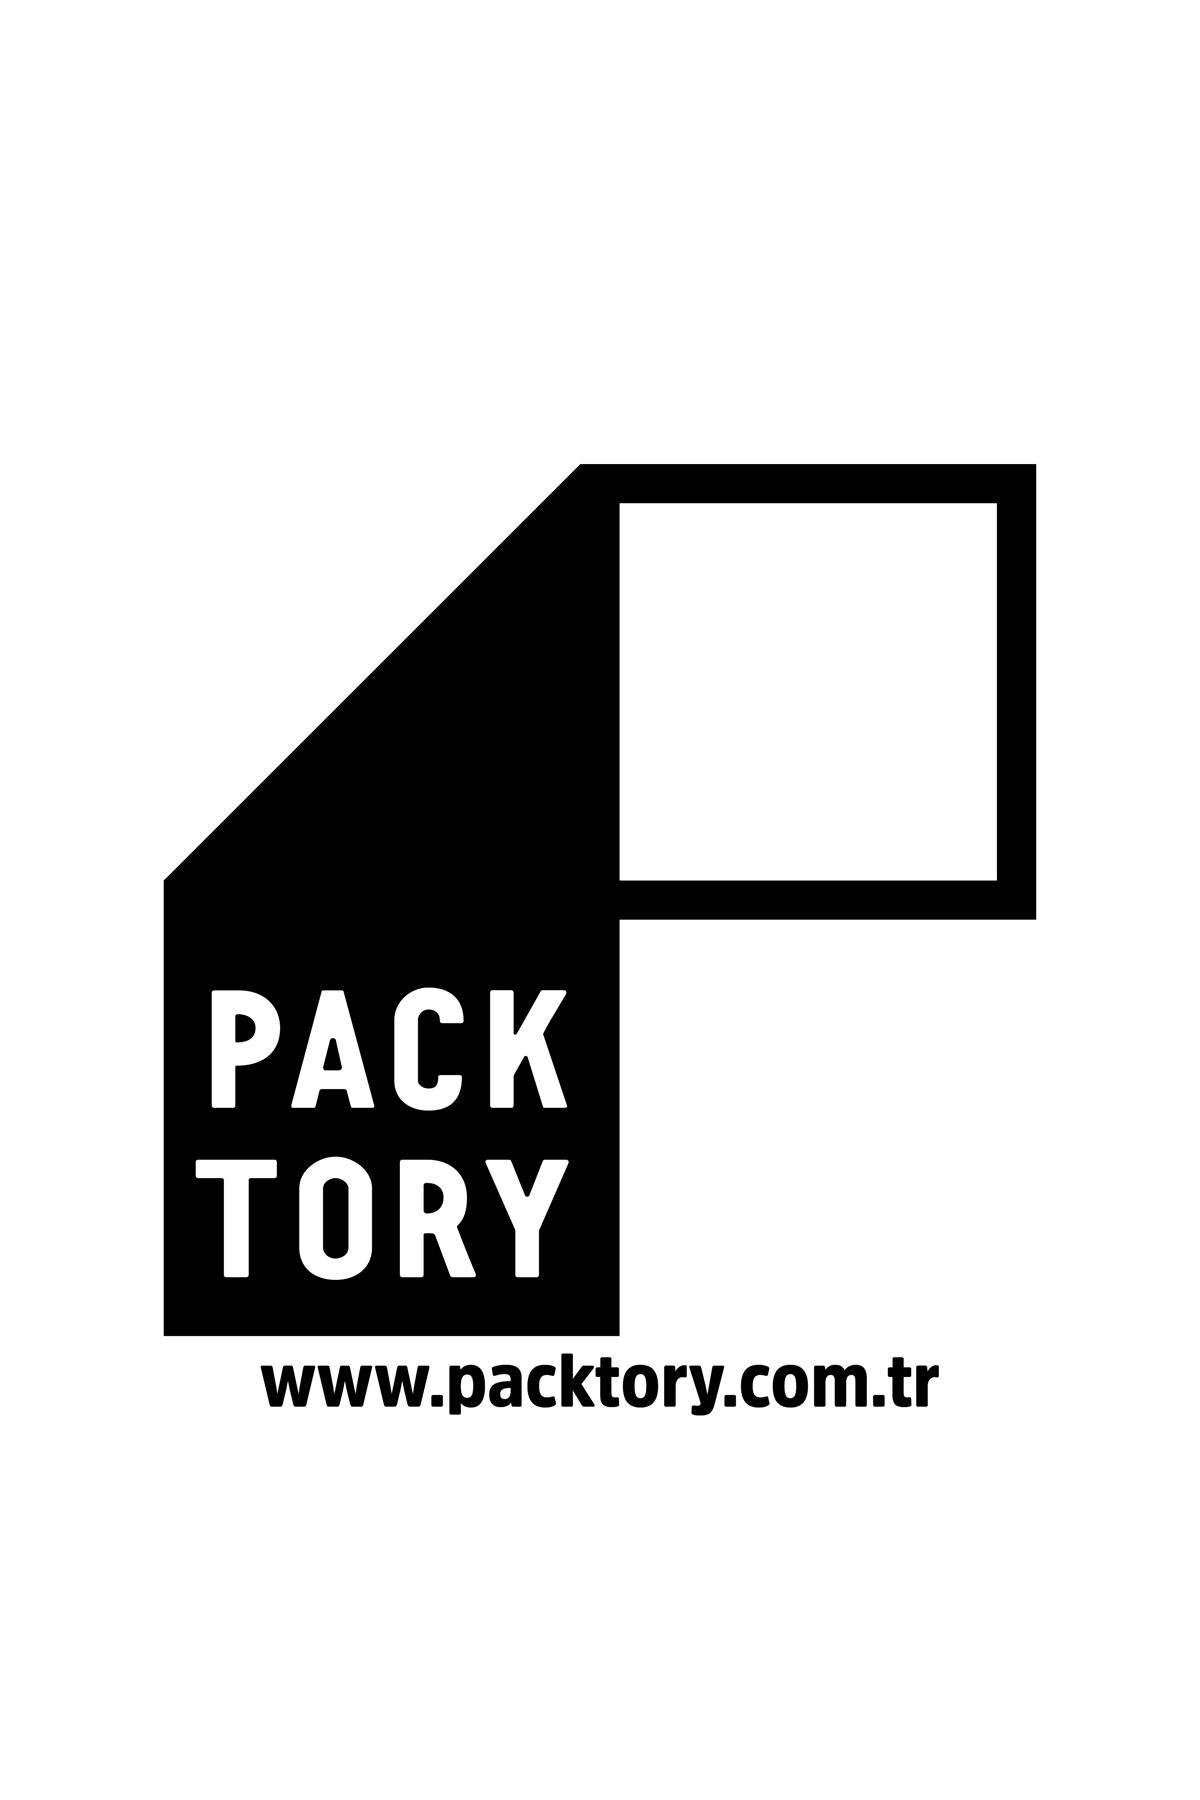 Packtory 11 x 18,5 + 3,5 Cm Ön Şeffaf Metalize Kilitli Doypack Ambalaj 100 Gr. 100 Adet 